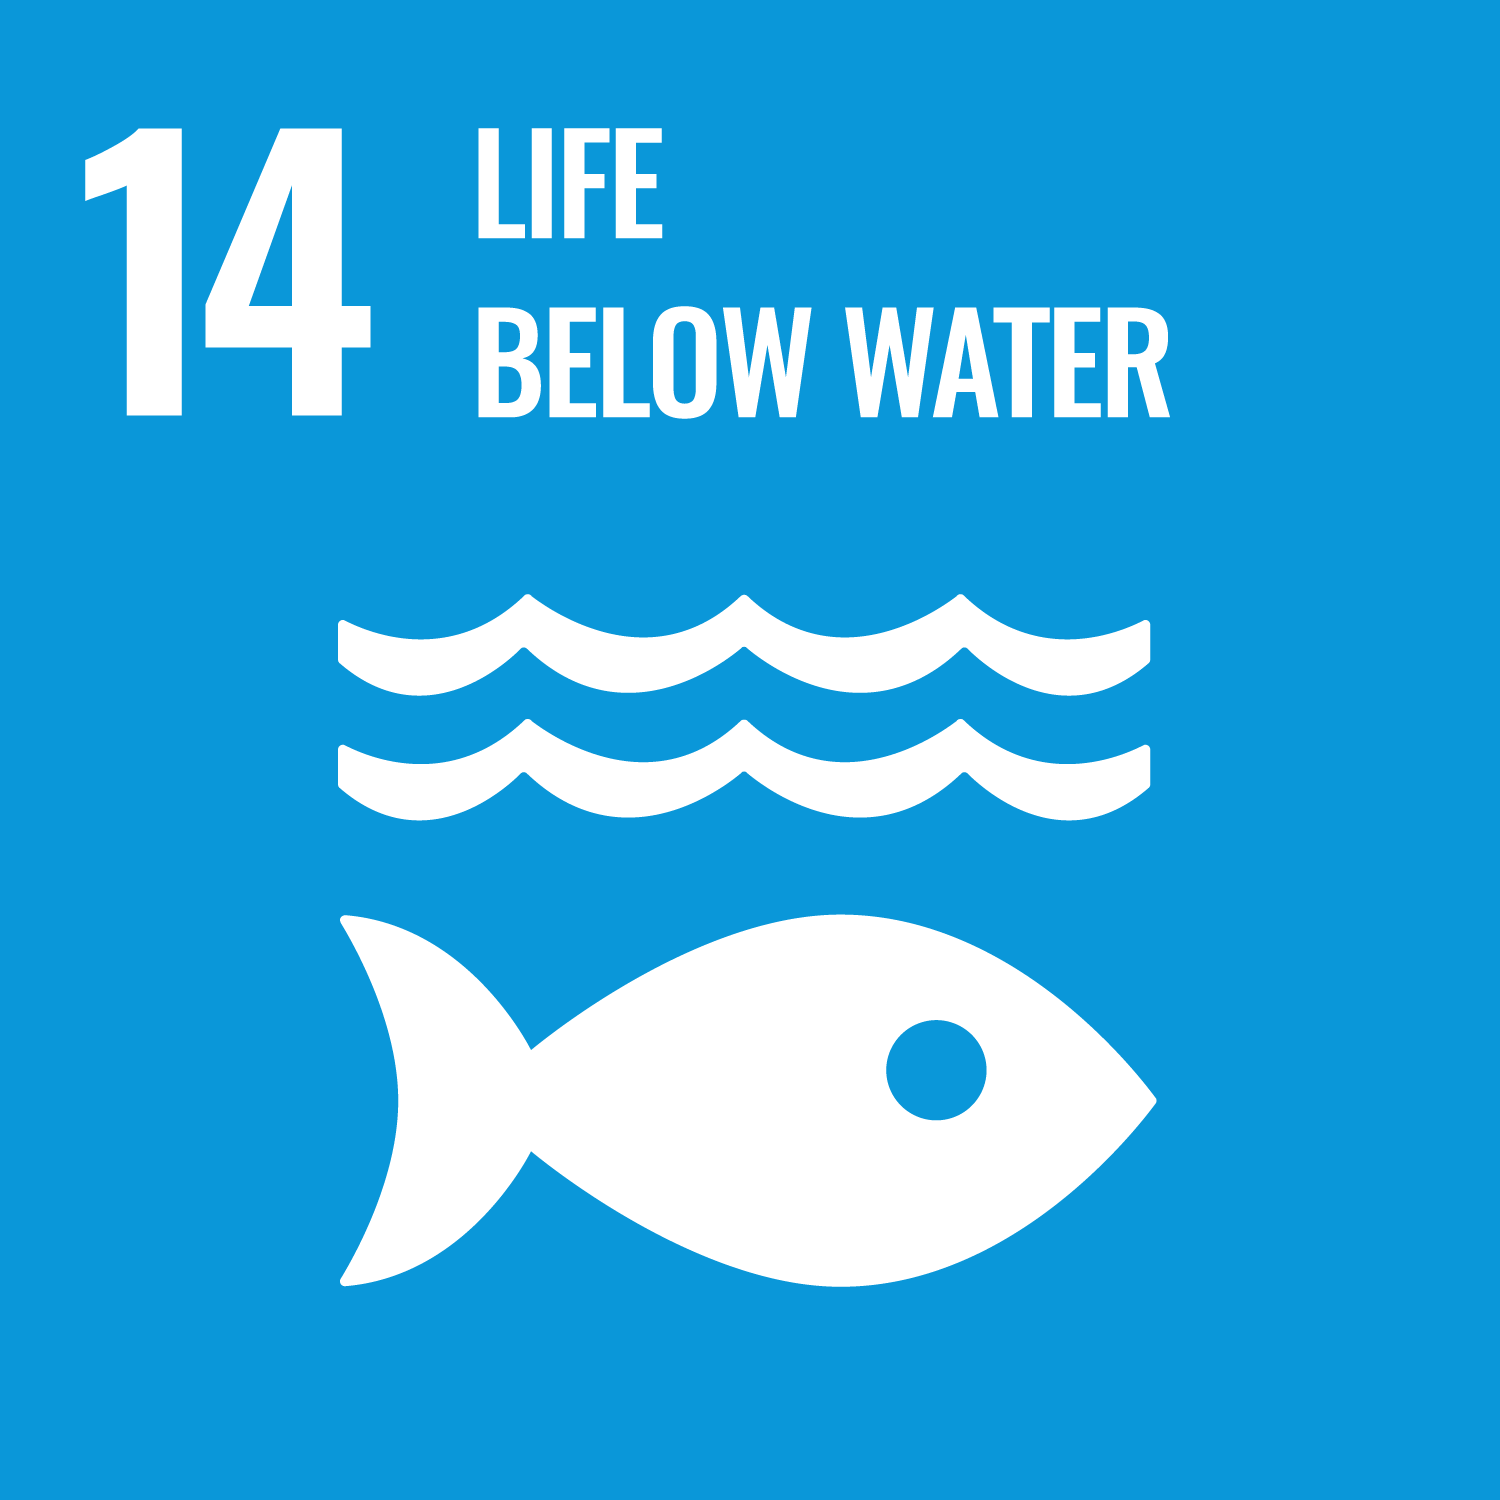 Life below water - SDG 14